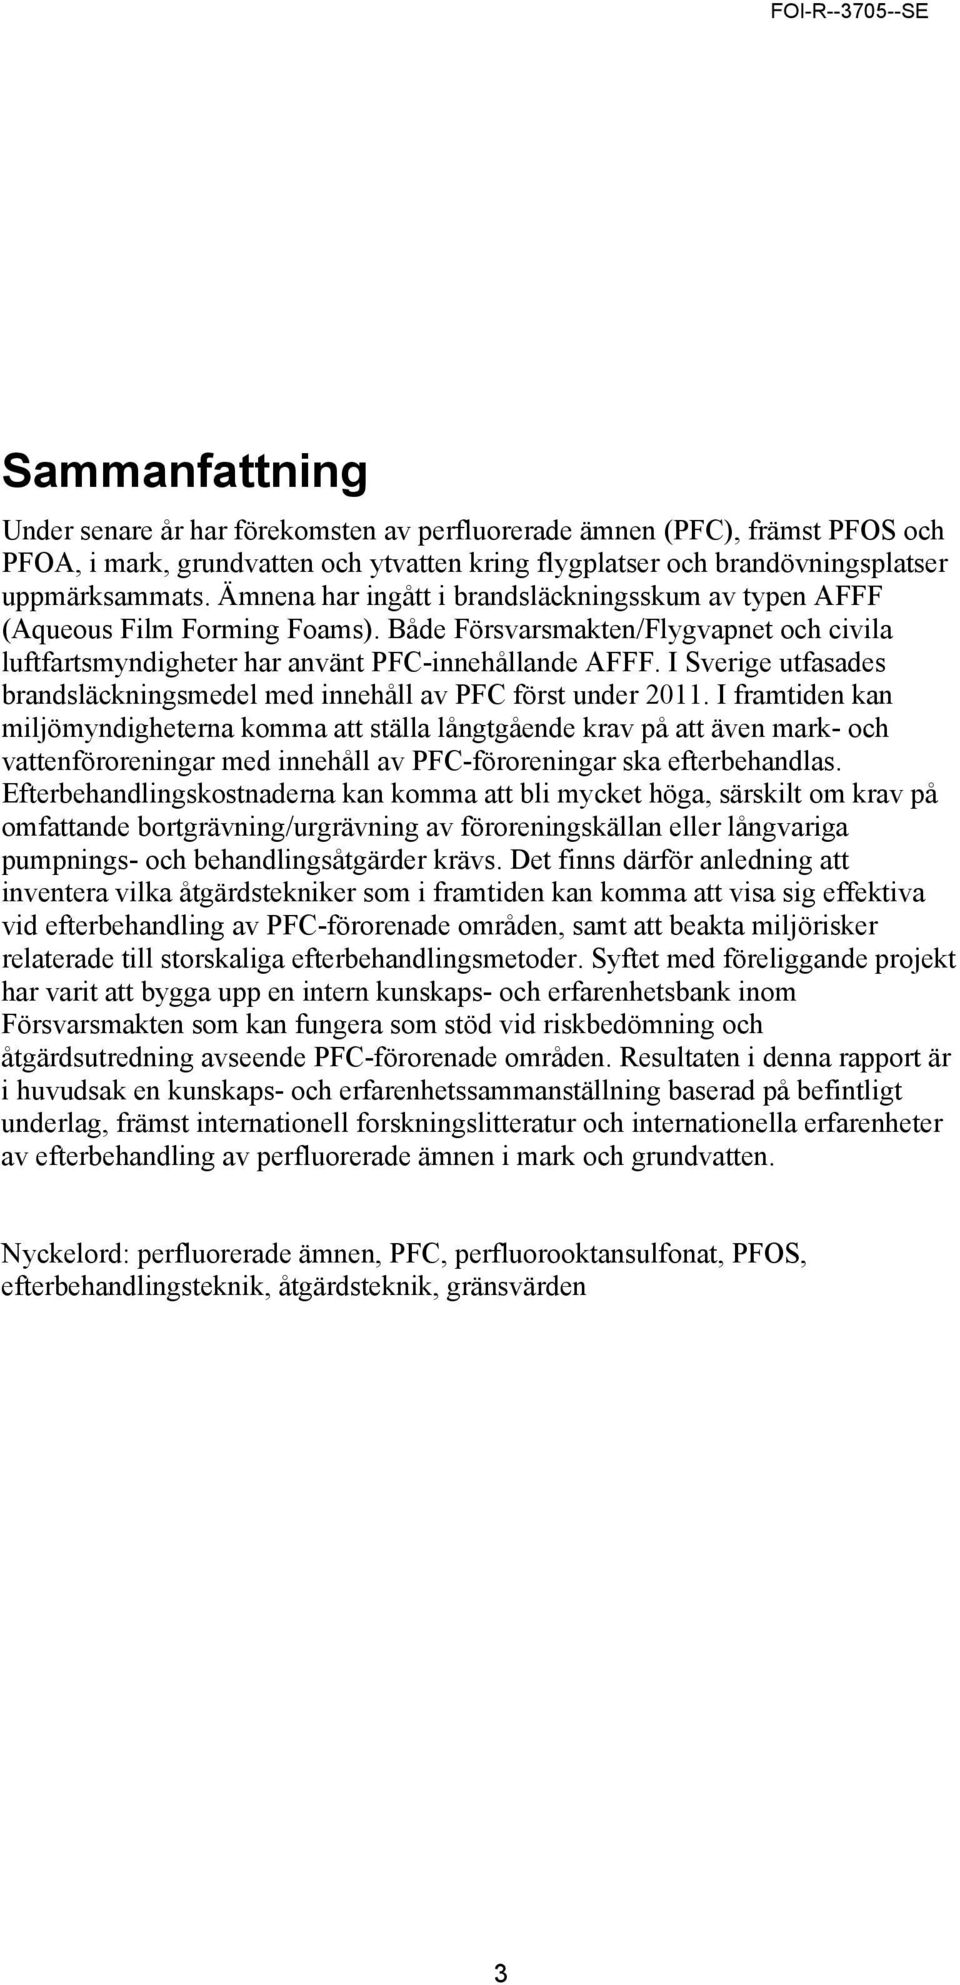 I Sverige utfasades brandsläckningsmedel med innehåll av PFC först under 2011.